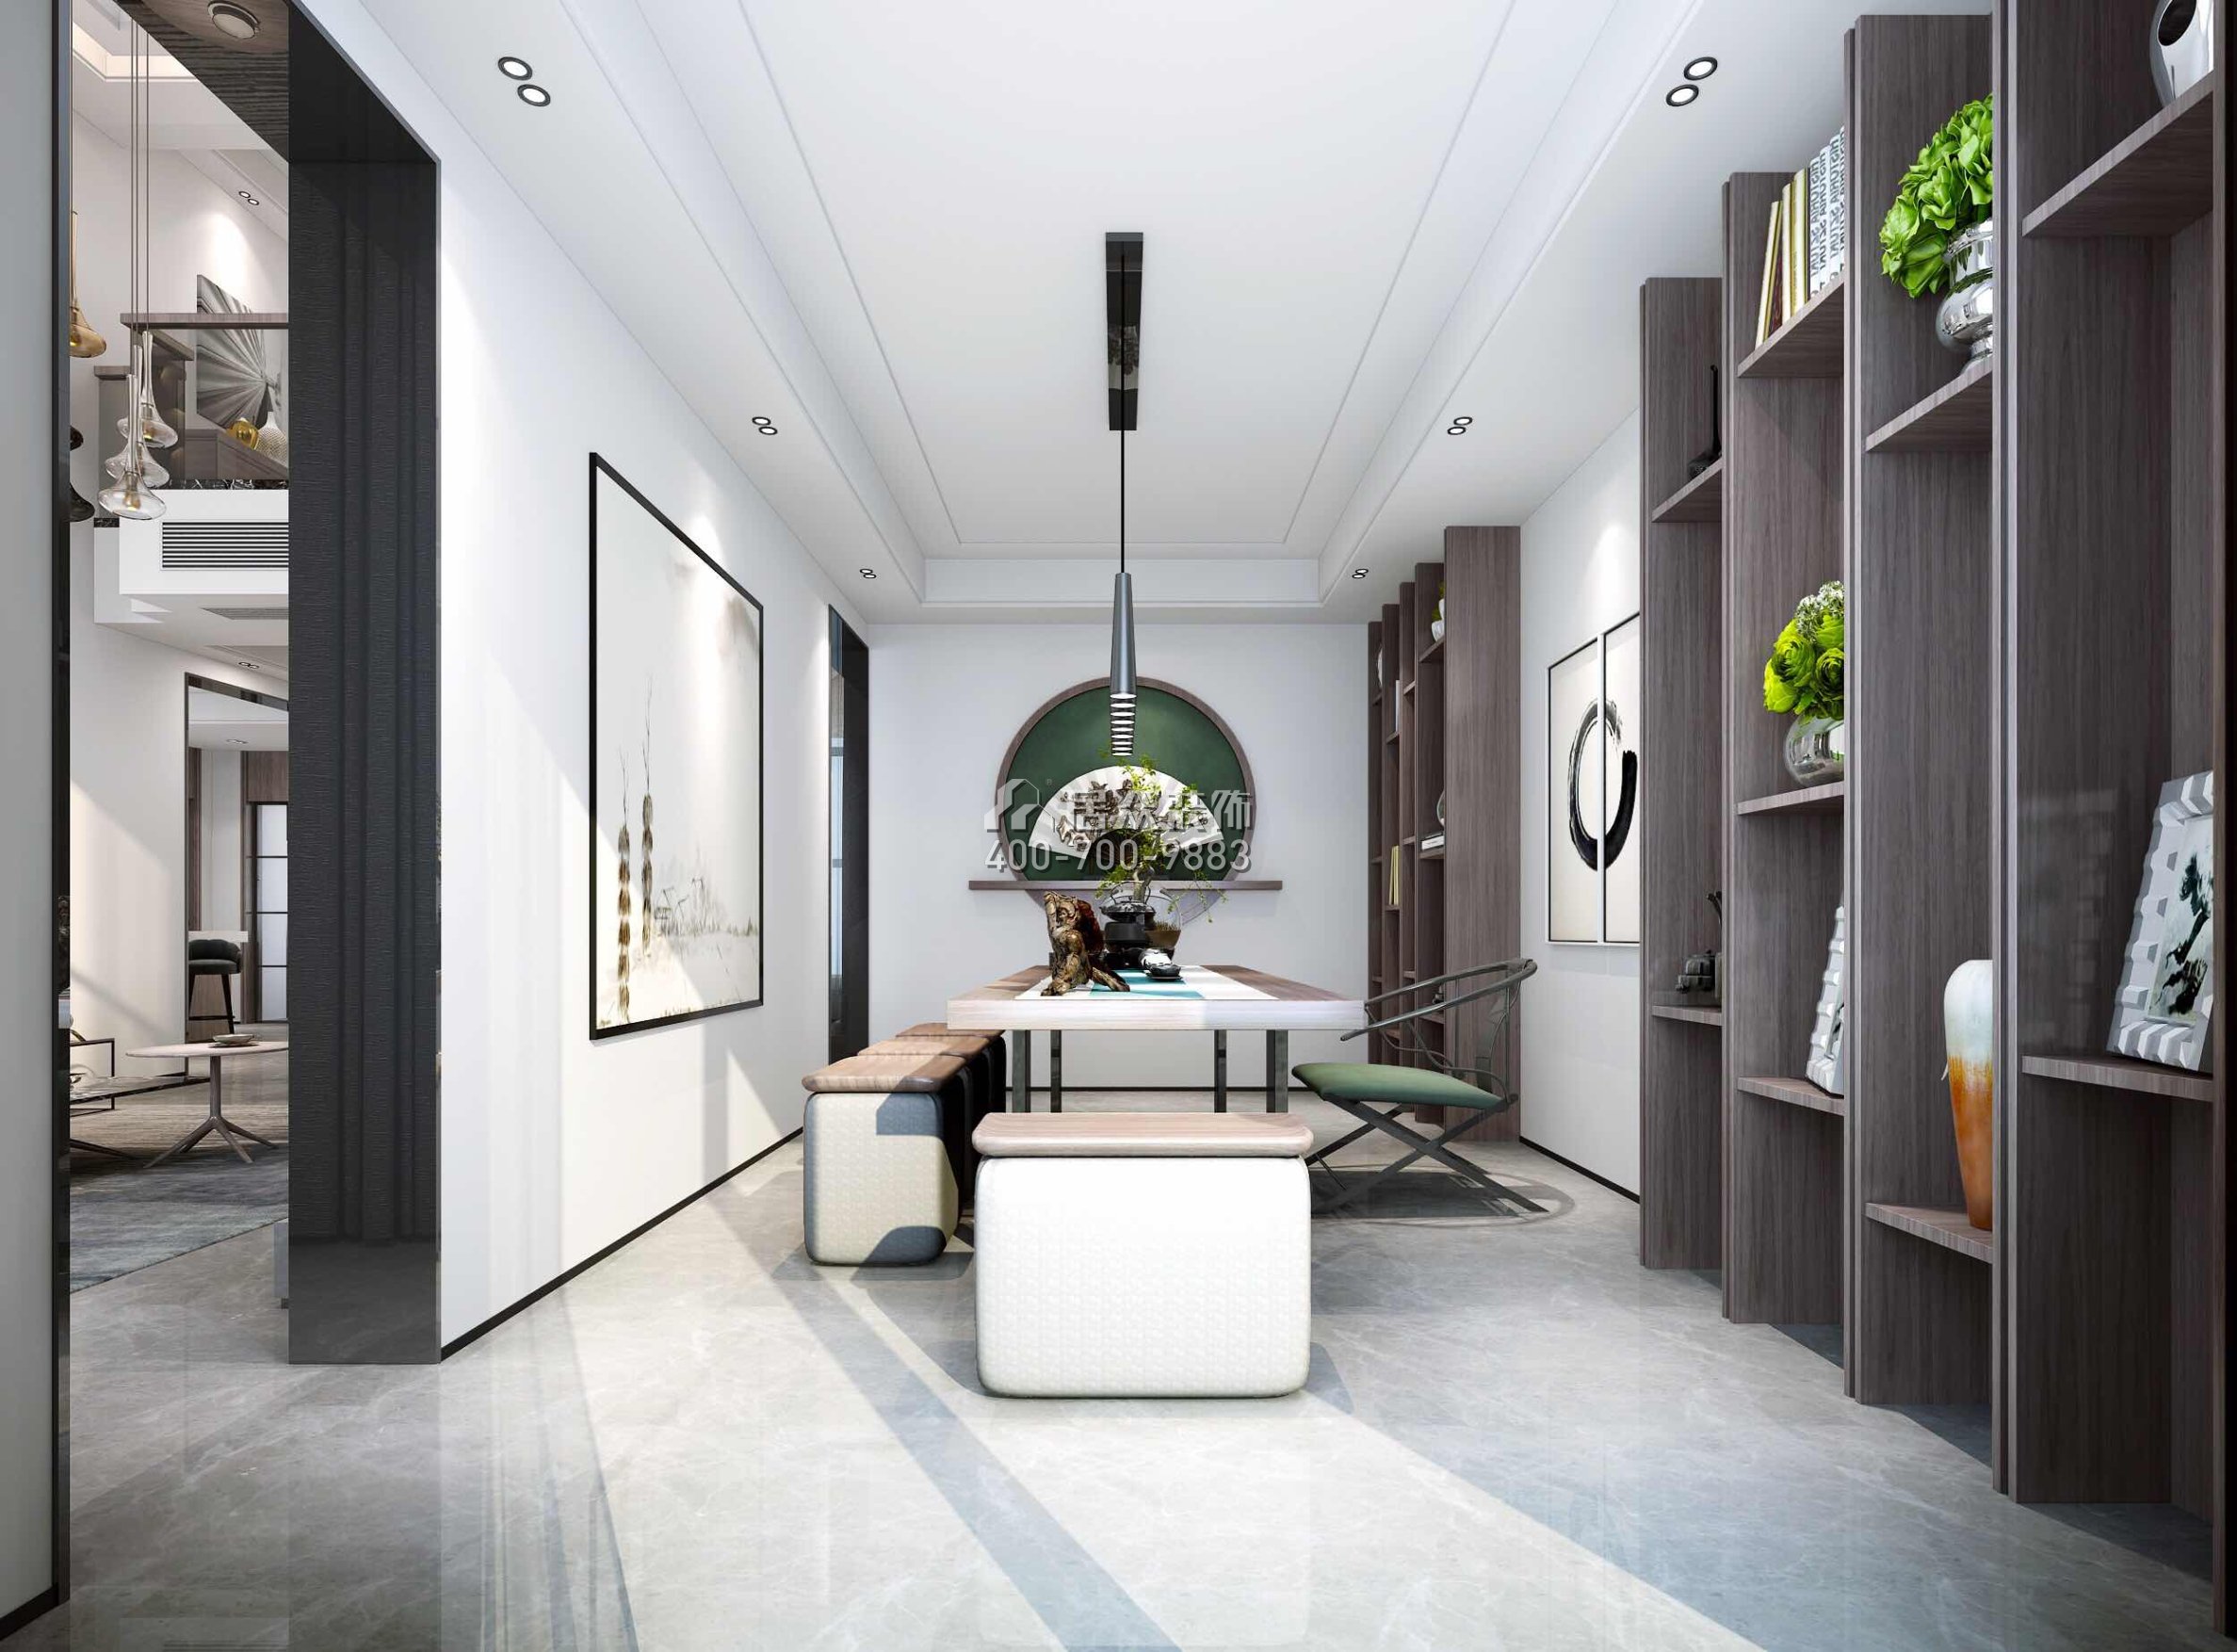 海逸豪庭321平方米現代簡約風格別墅戶型茶室裝修效果圖